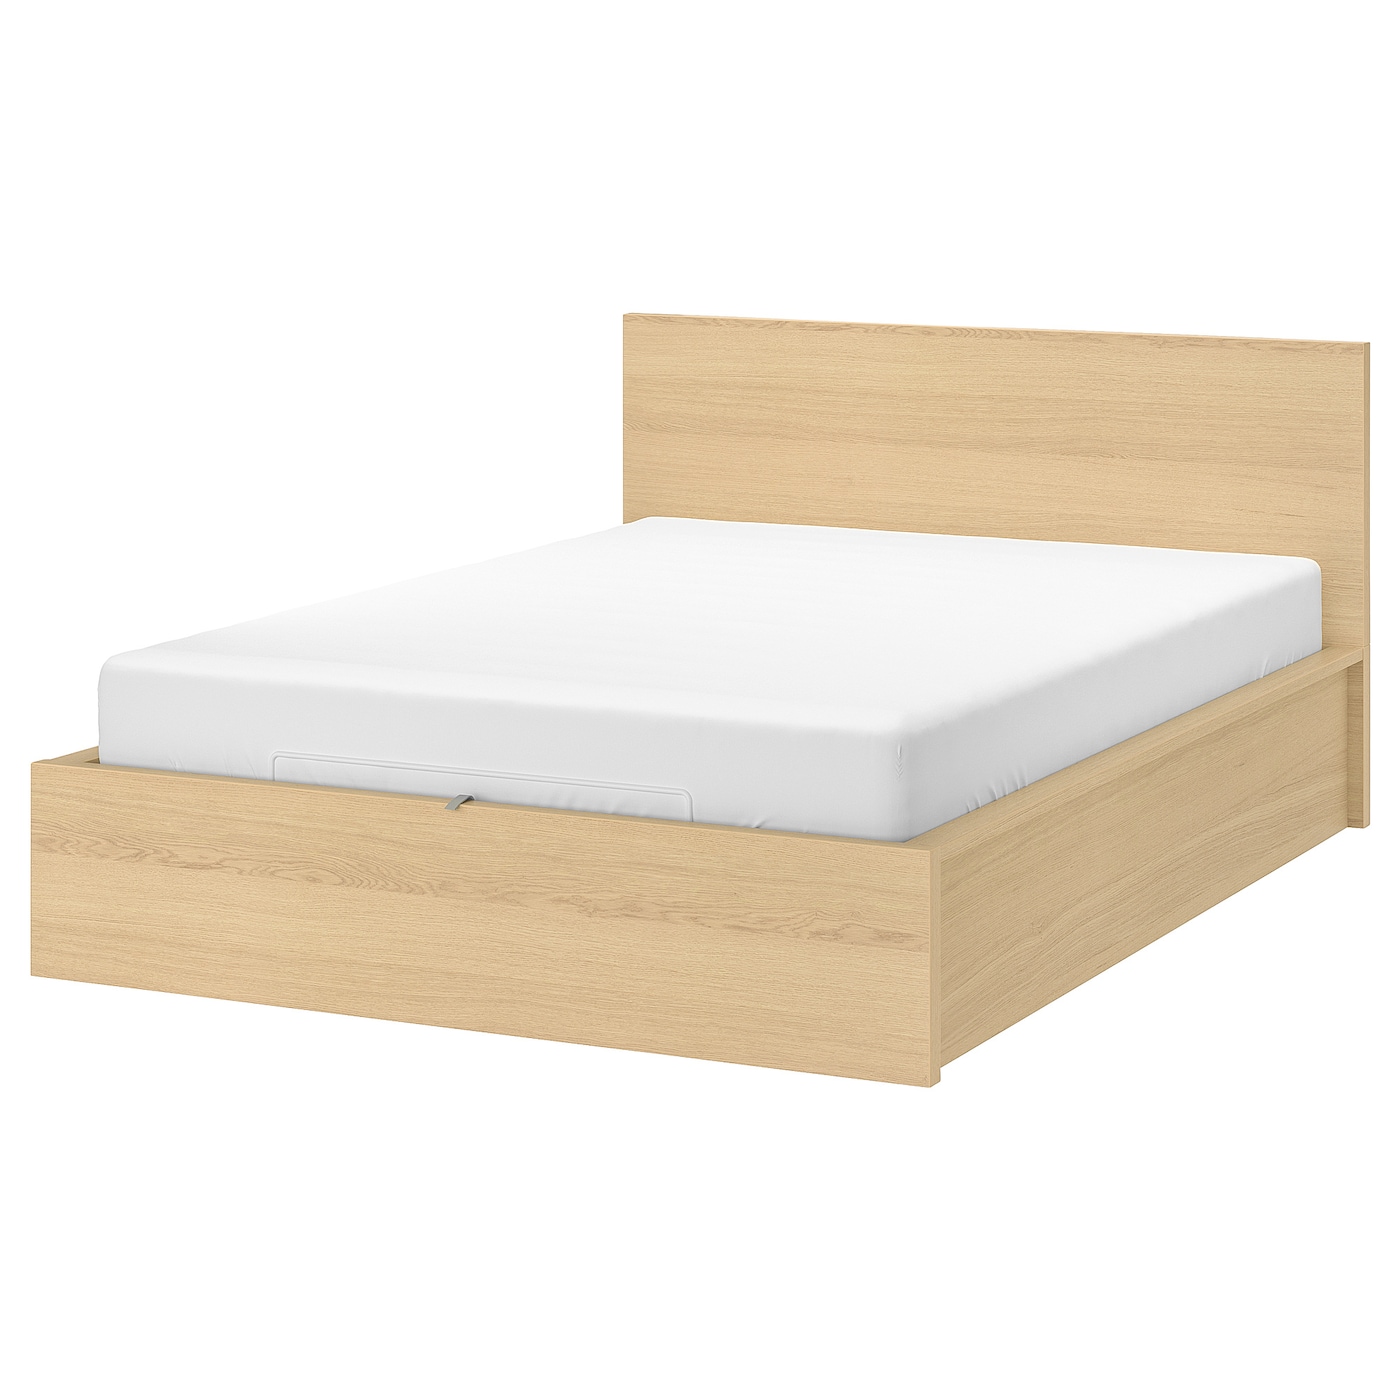 Кровать с ящиком для хранения - IKEA MALM, 200х160 см, под беленый дуб, МАЛЬМ ИКЕА